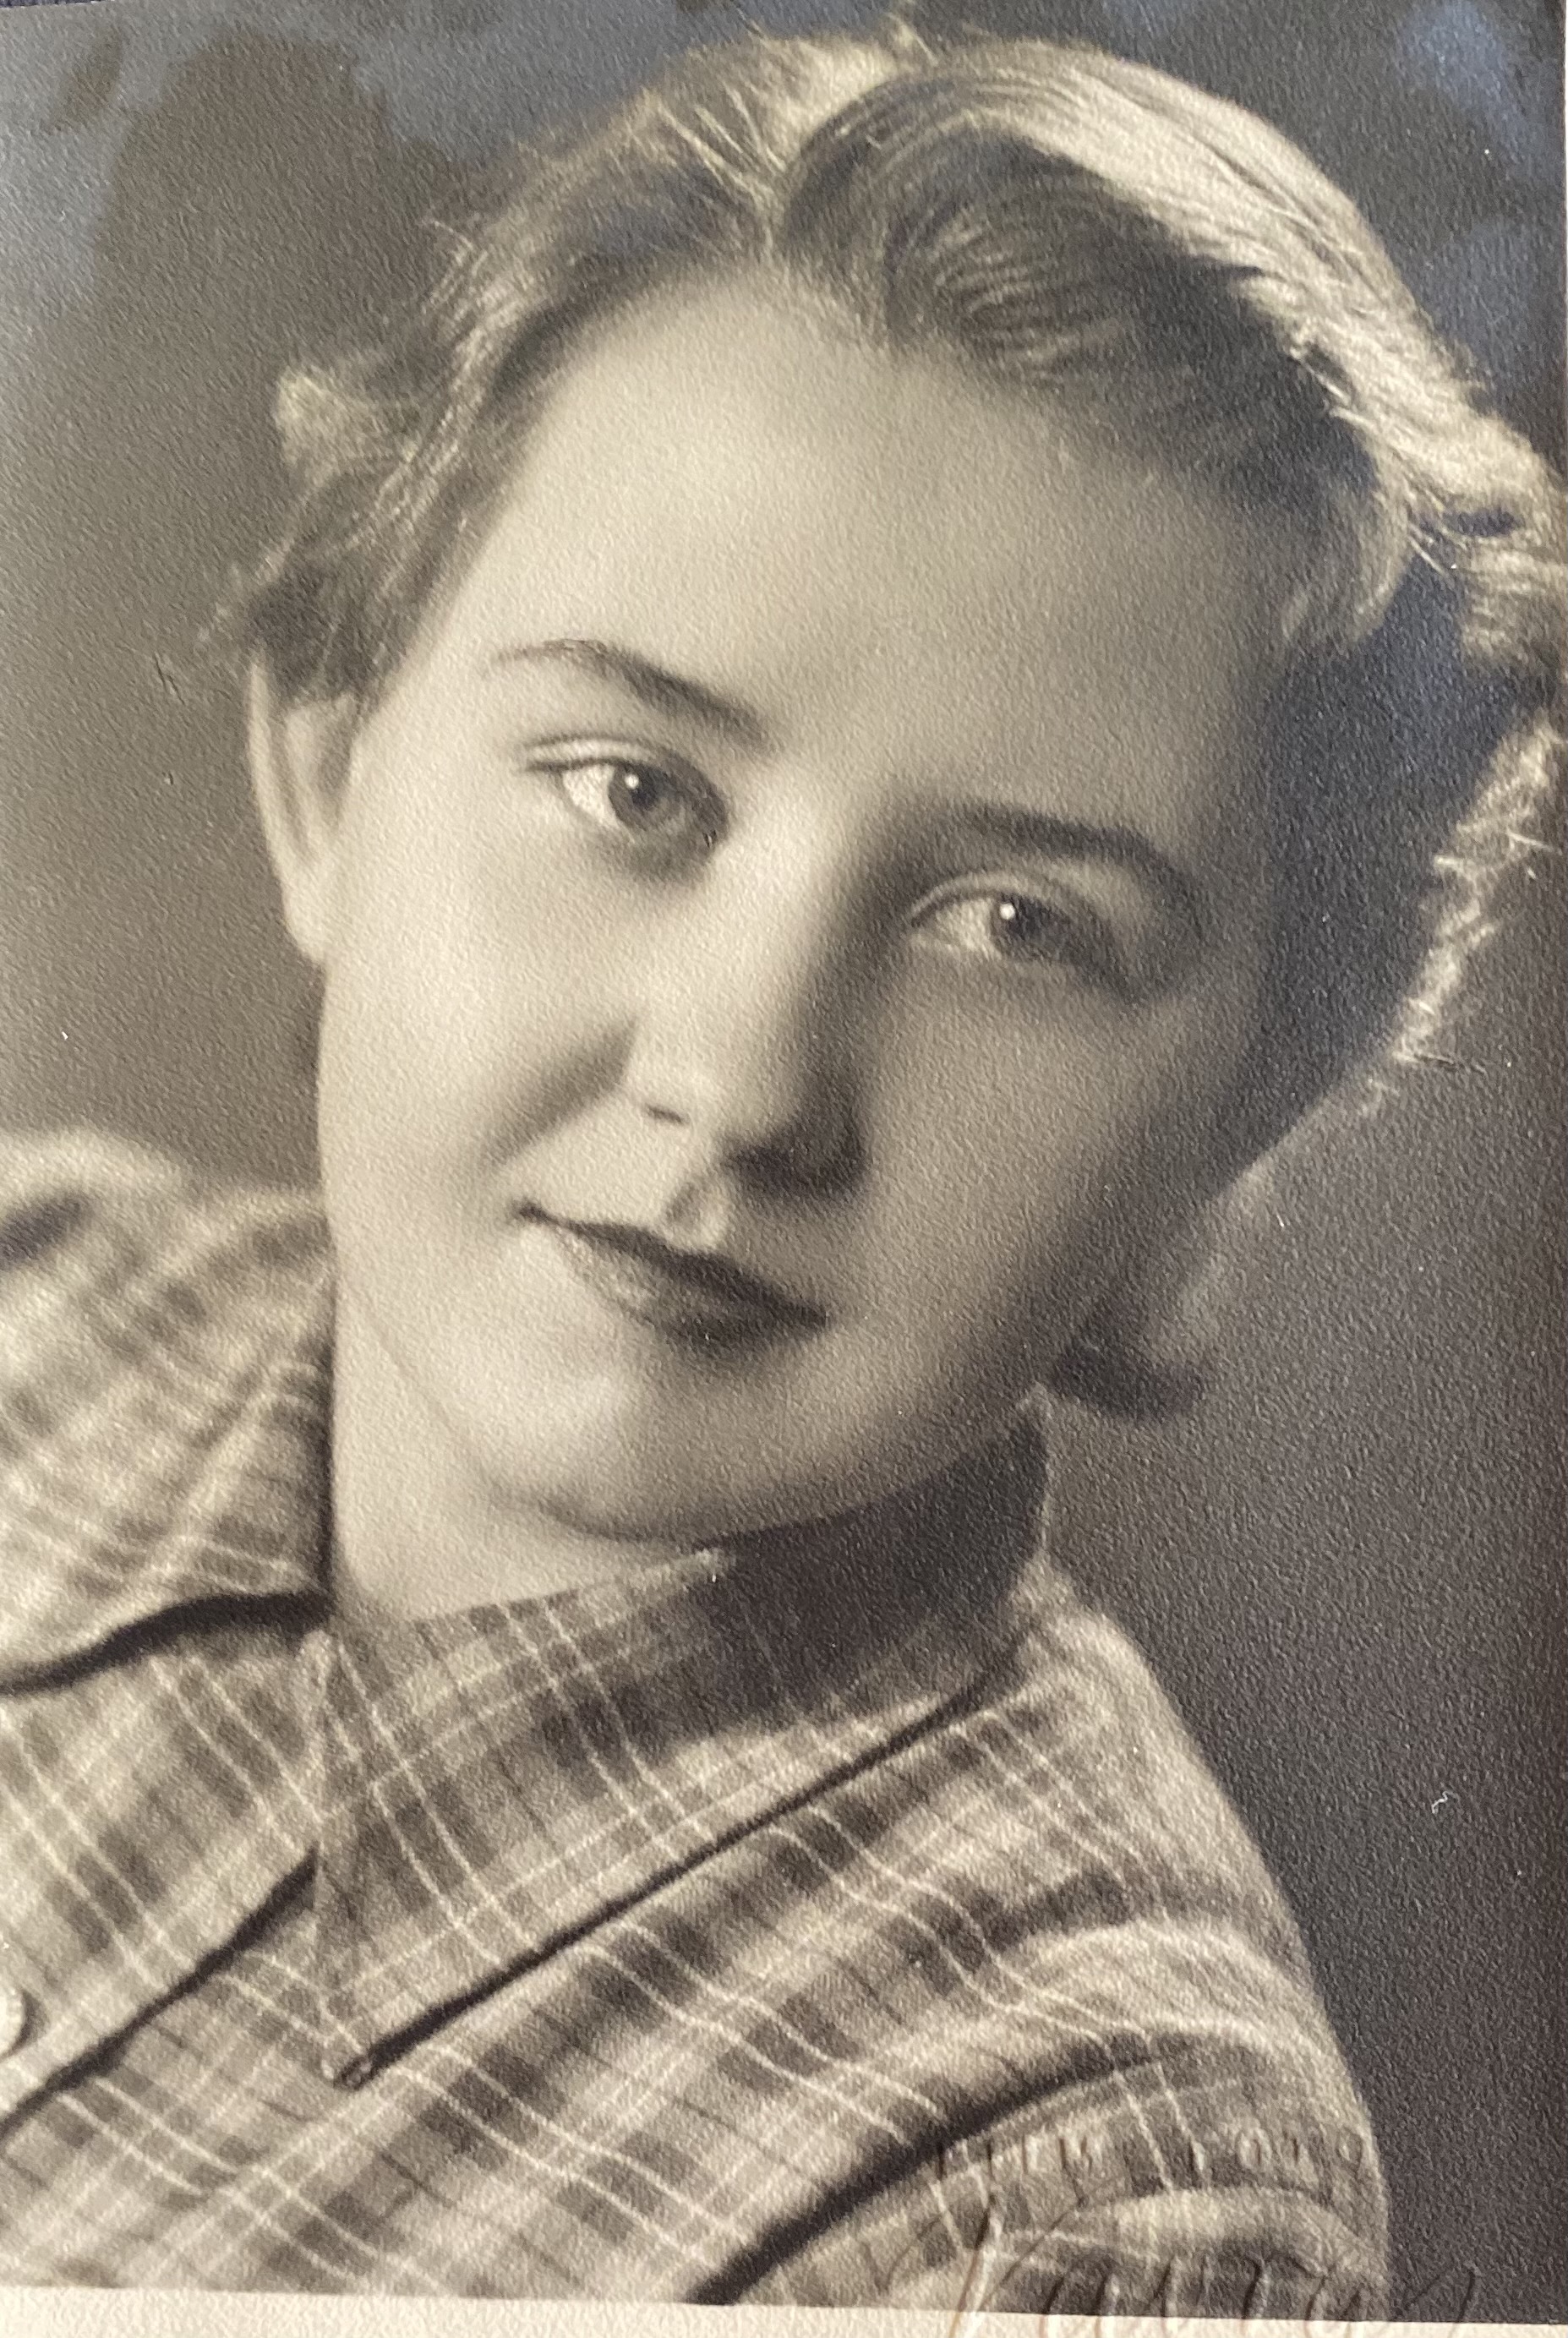 Jana Peroutková in 1956